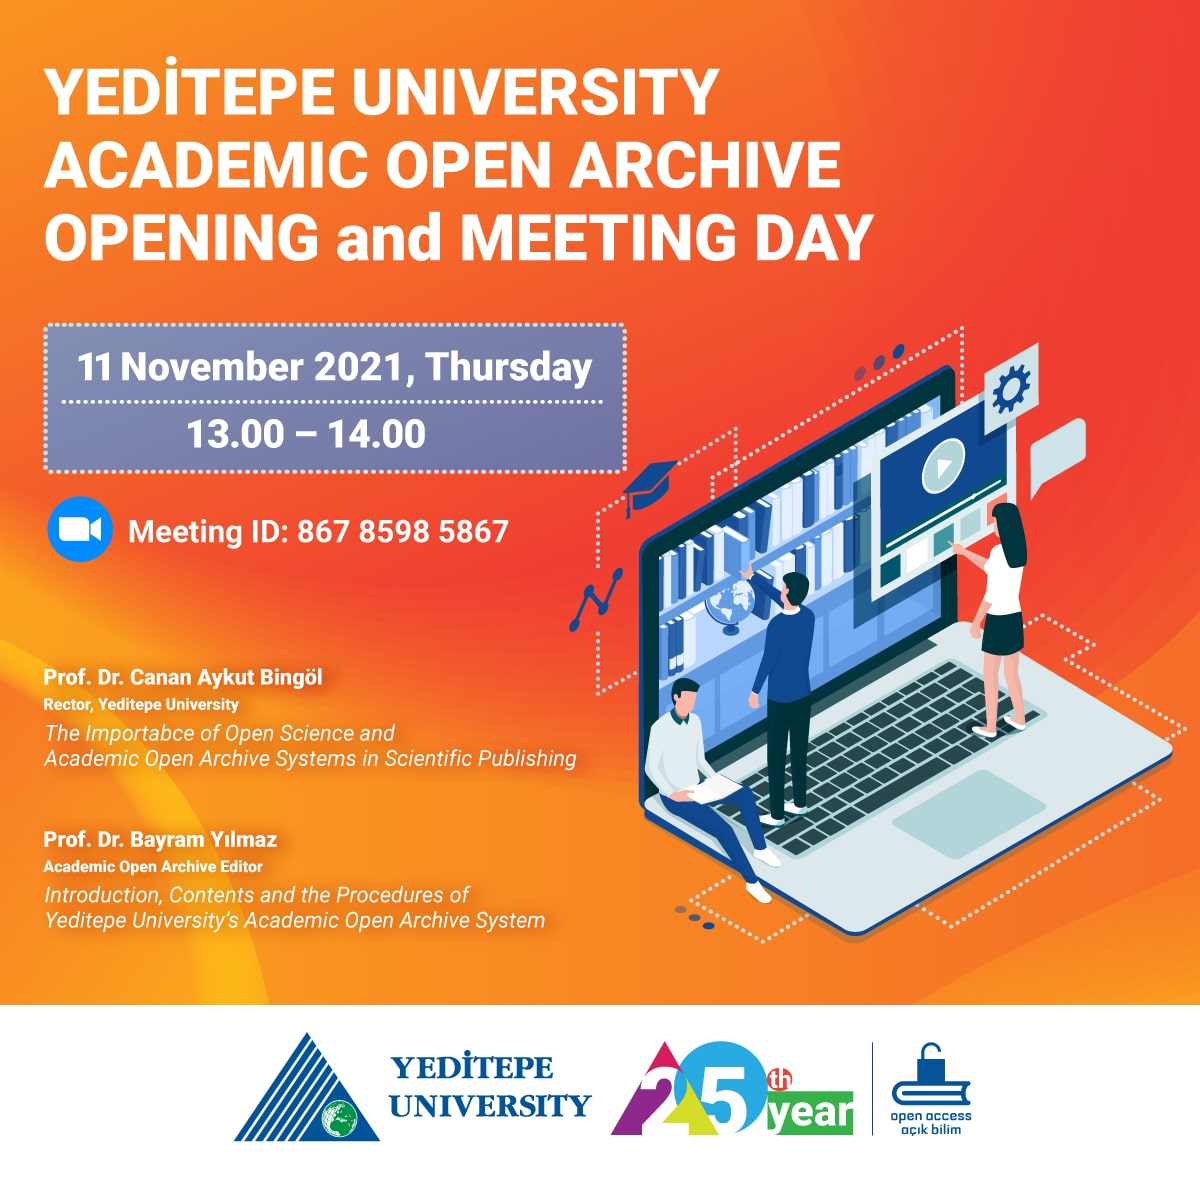 Yeditepe Üniversitesi Akademik Açık Arşiv Açılış ve Tanıtım Günü